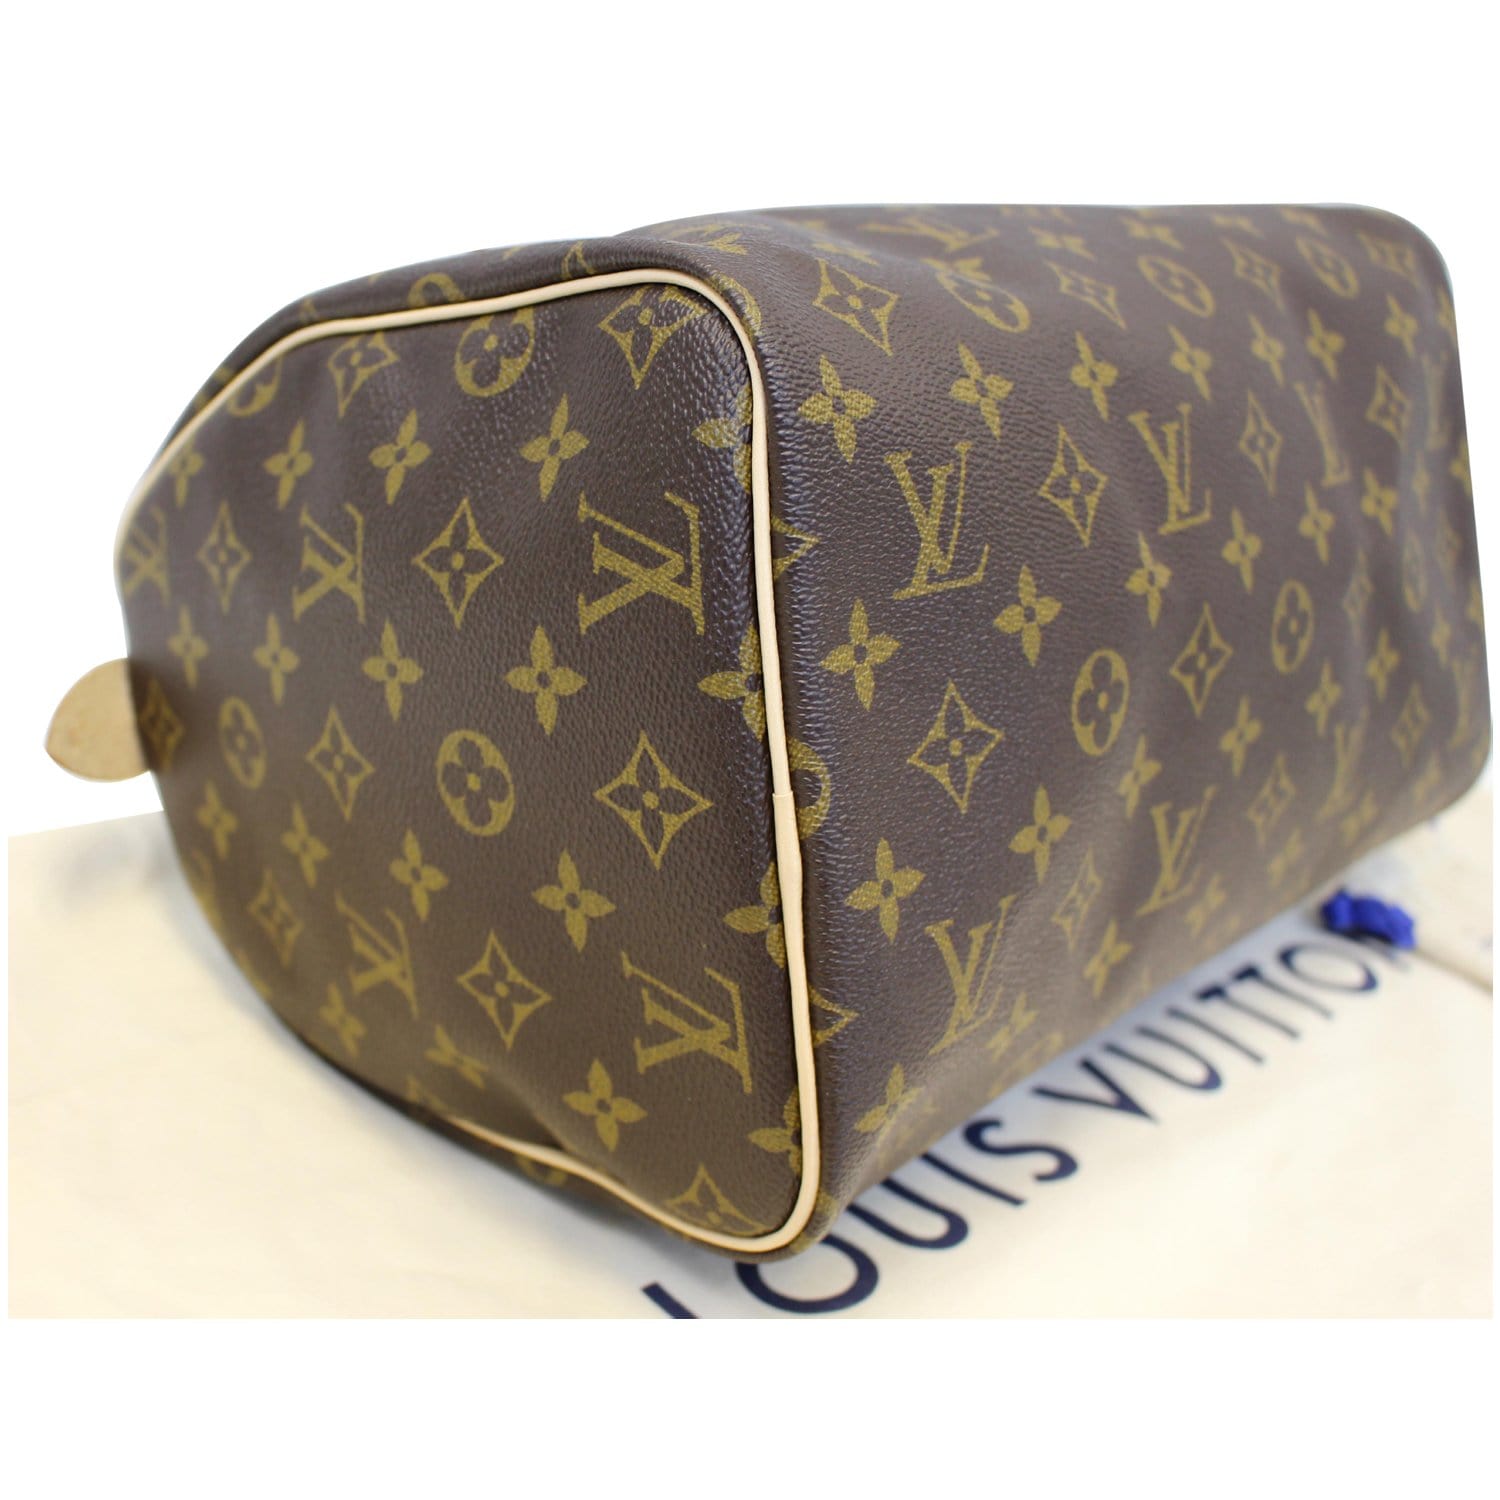 Speedy handbag Louis Vuitton Brown in Cotton - 31733862